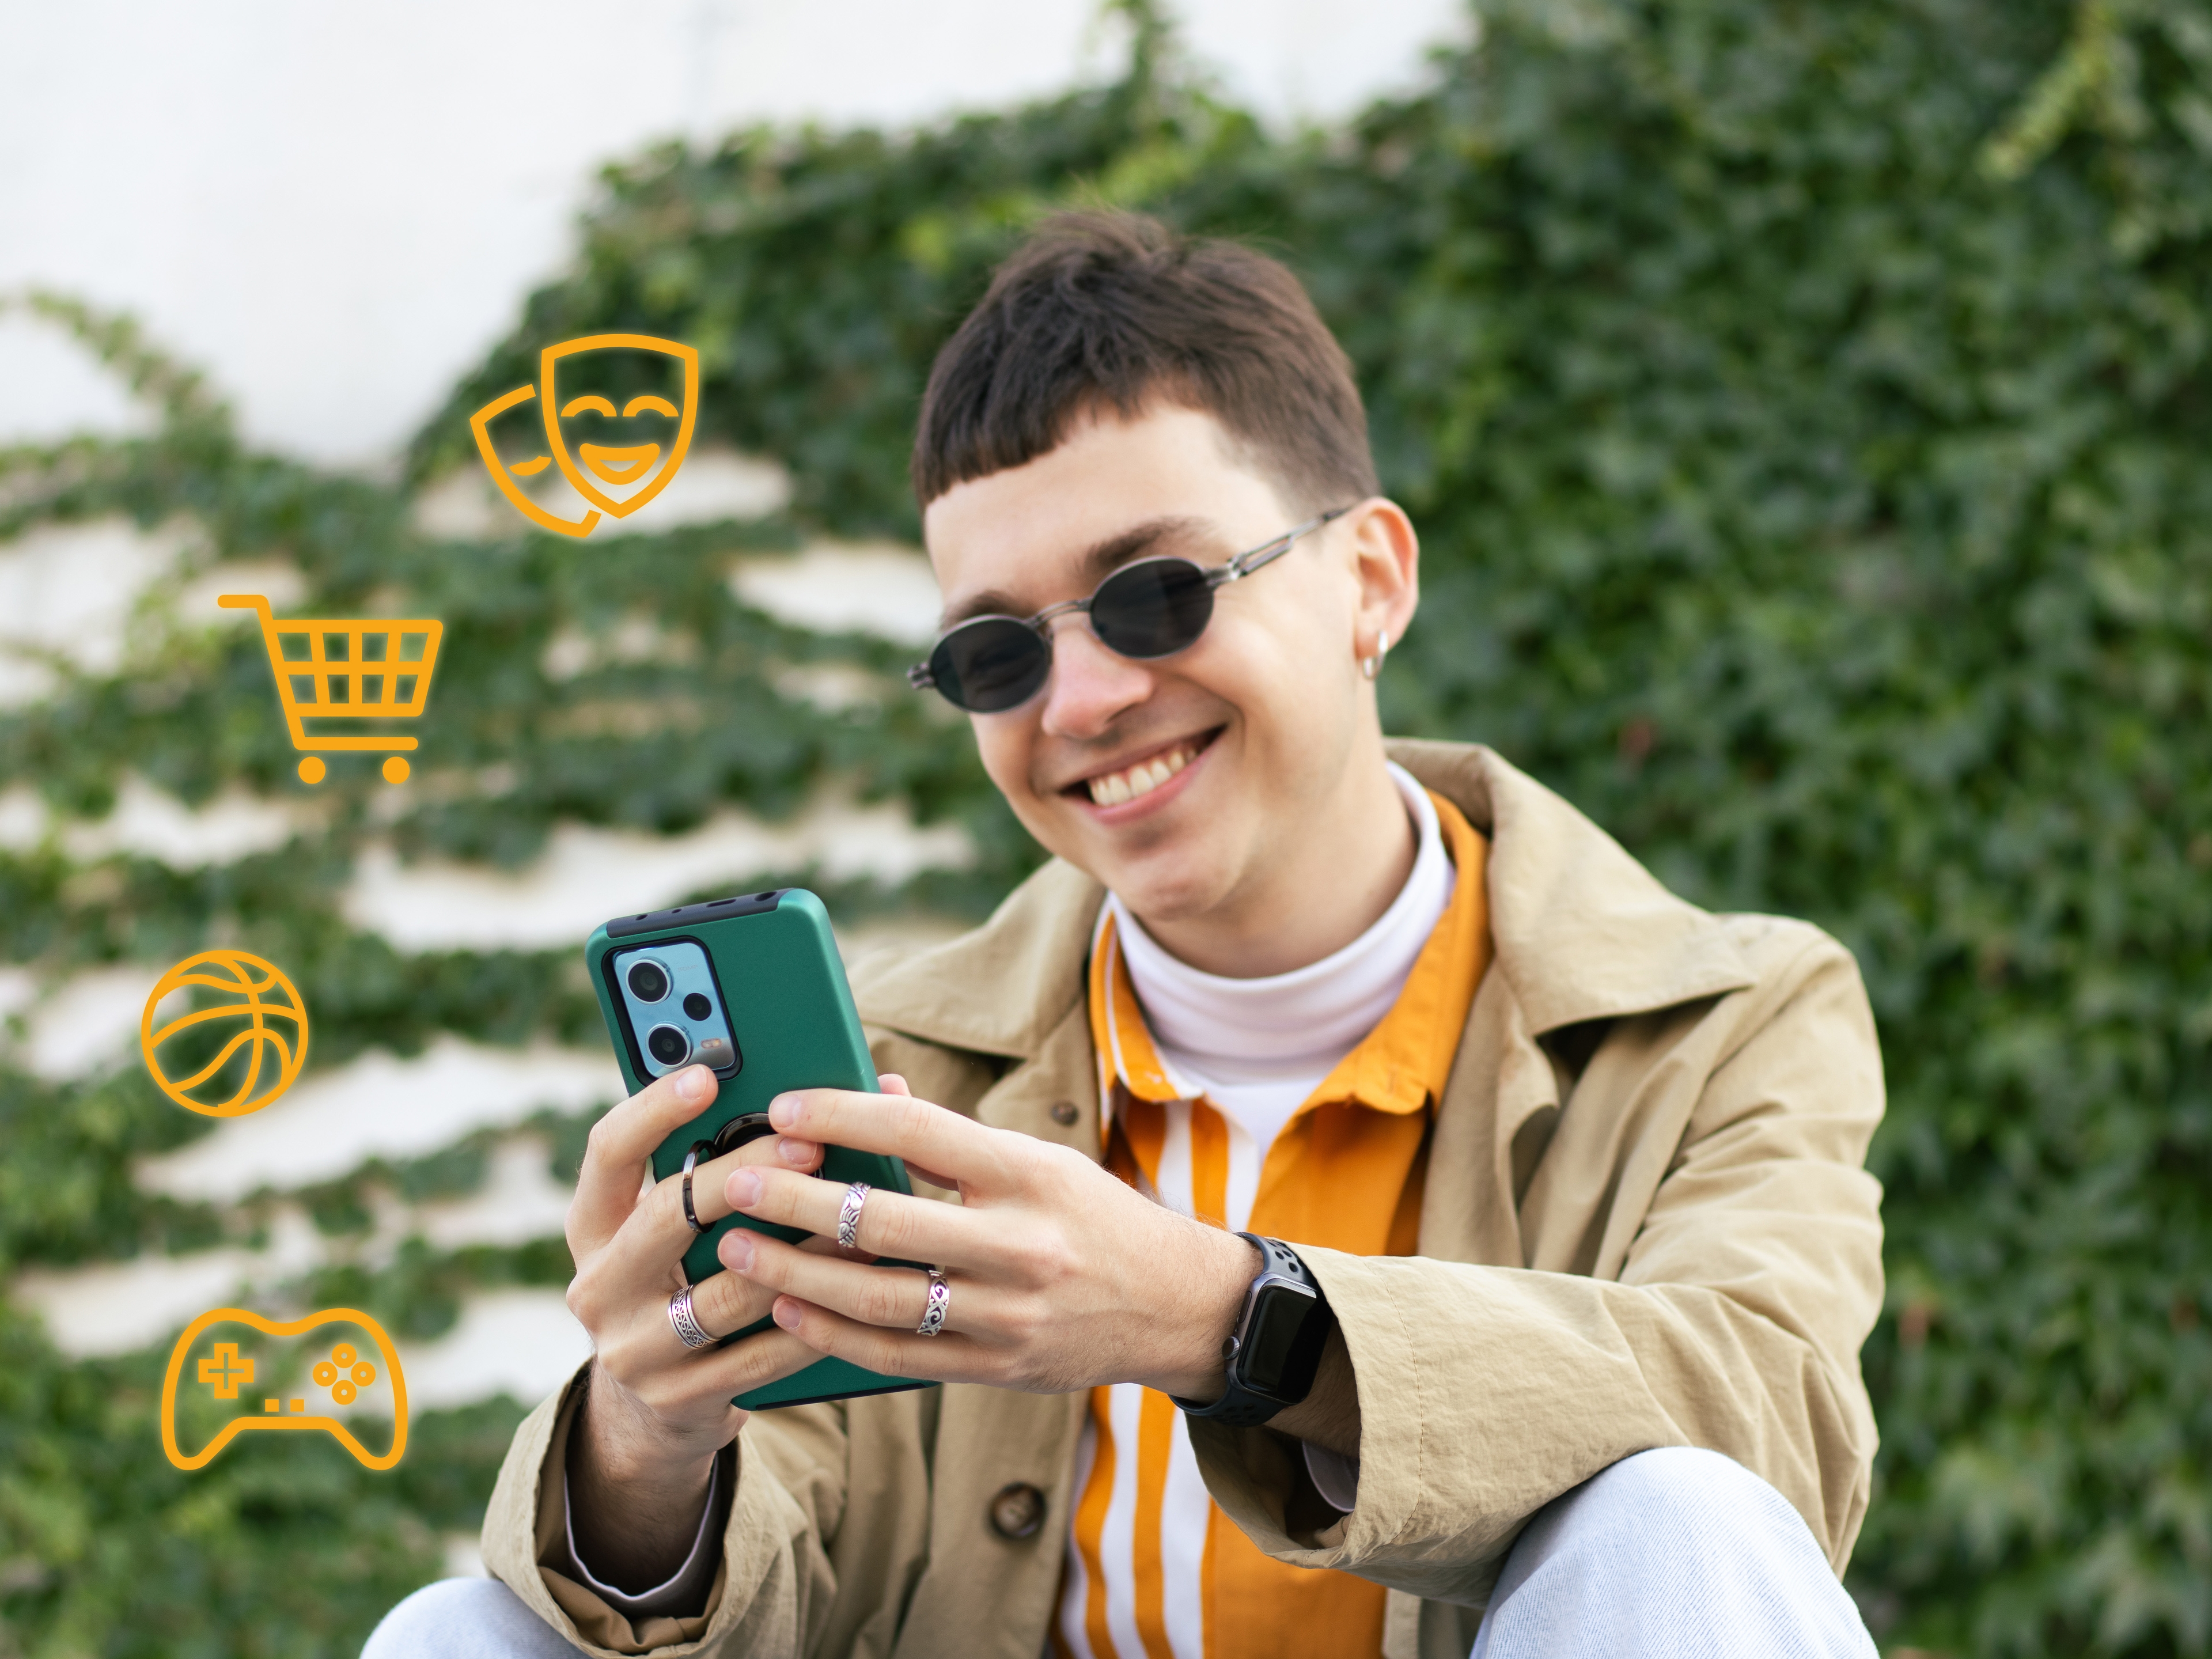 Bild einer Person, die ihr Handy anlächelt, und Elemente, die zeigen, wie paysafecard funktioniert